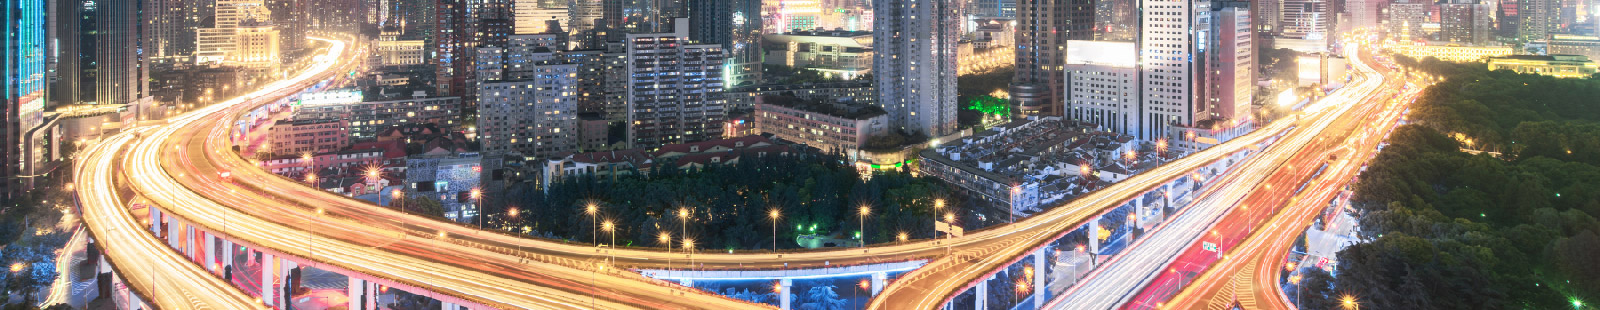 widok z góry na autostradę międzystanową w nocy w dużym mieście